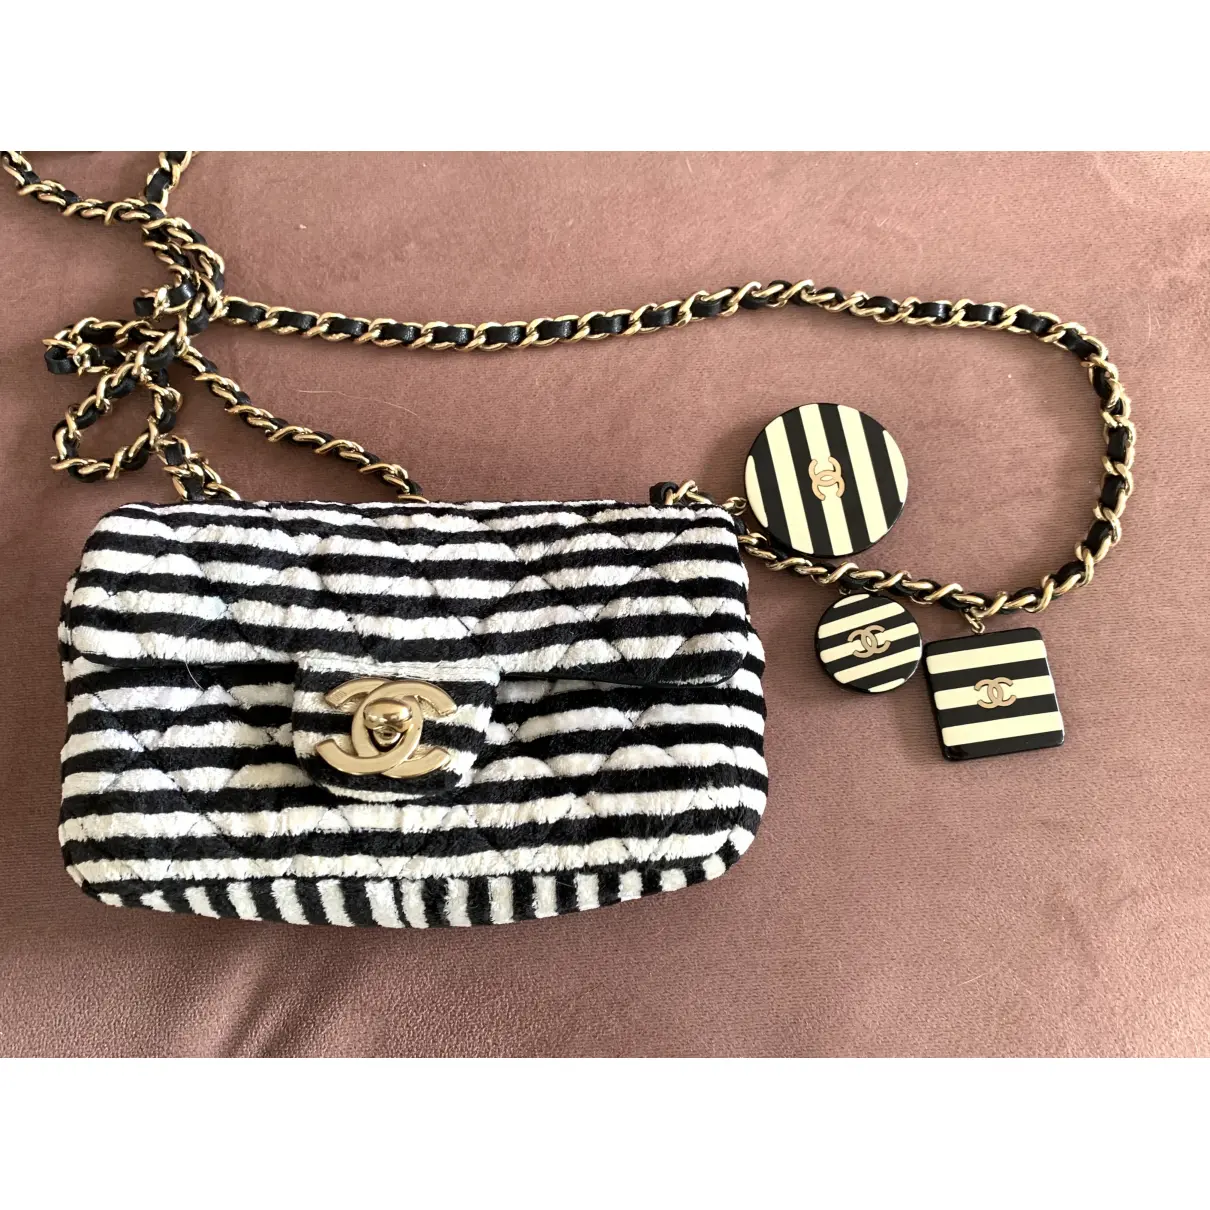 Timeless/Classique velvet handbag Chanel